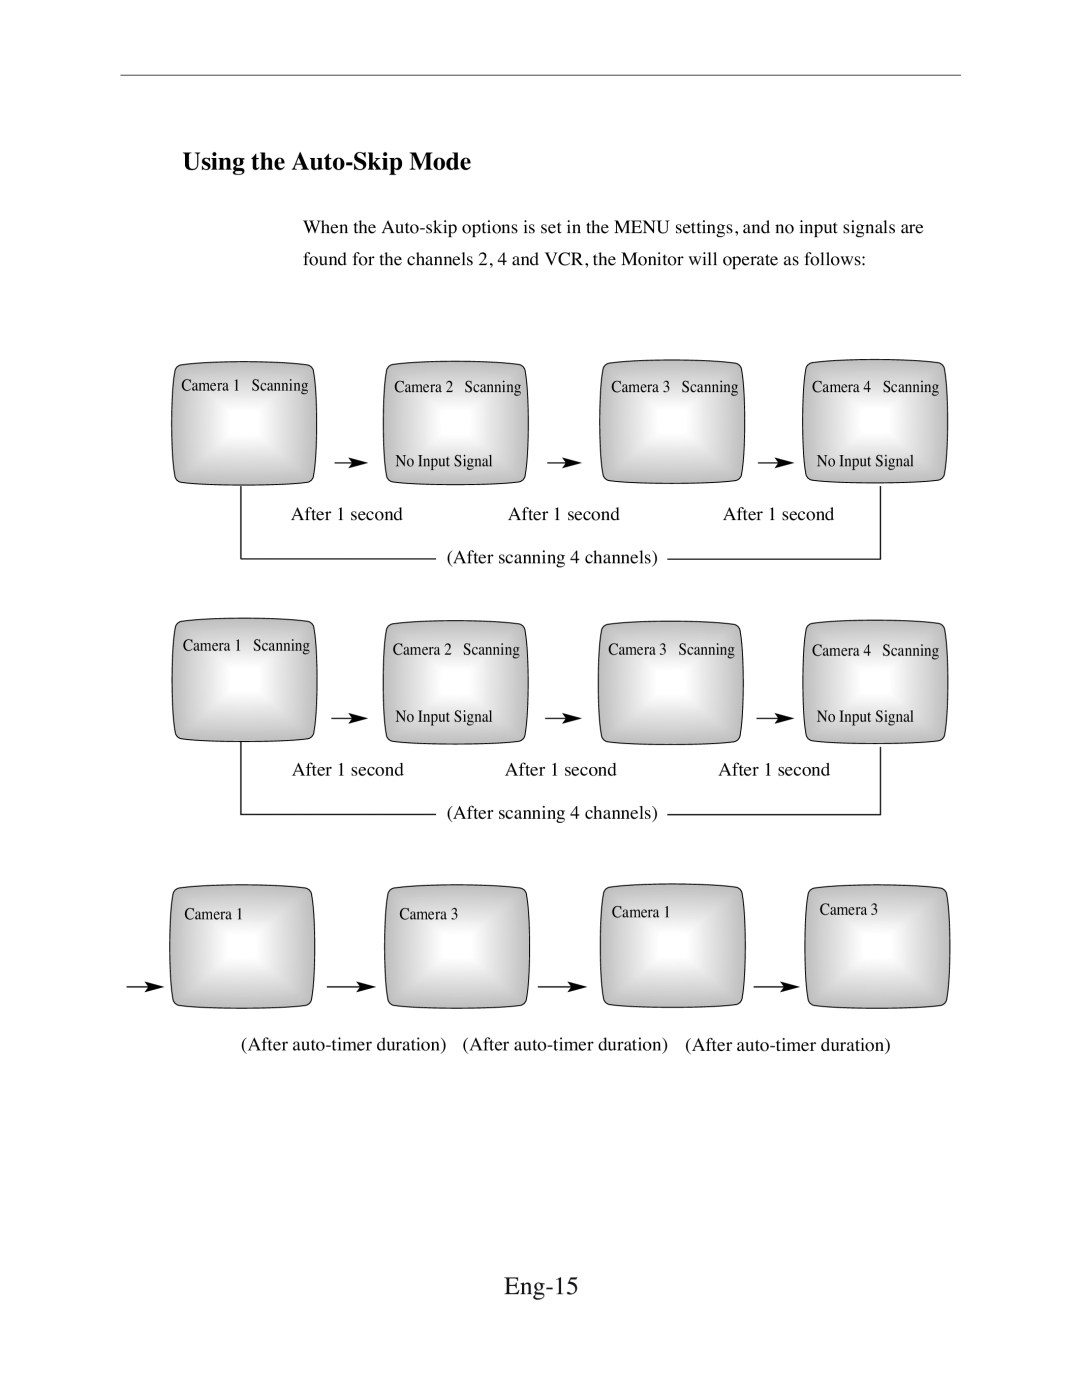 Samsung SMC-150FP, SMC-212FP, SMC-152FPV, SMC-210FPV manual Using the Auto-Skip Mode, Eng-15 